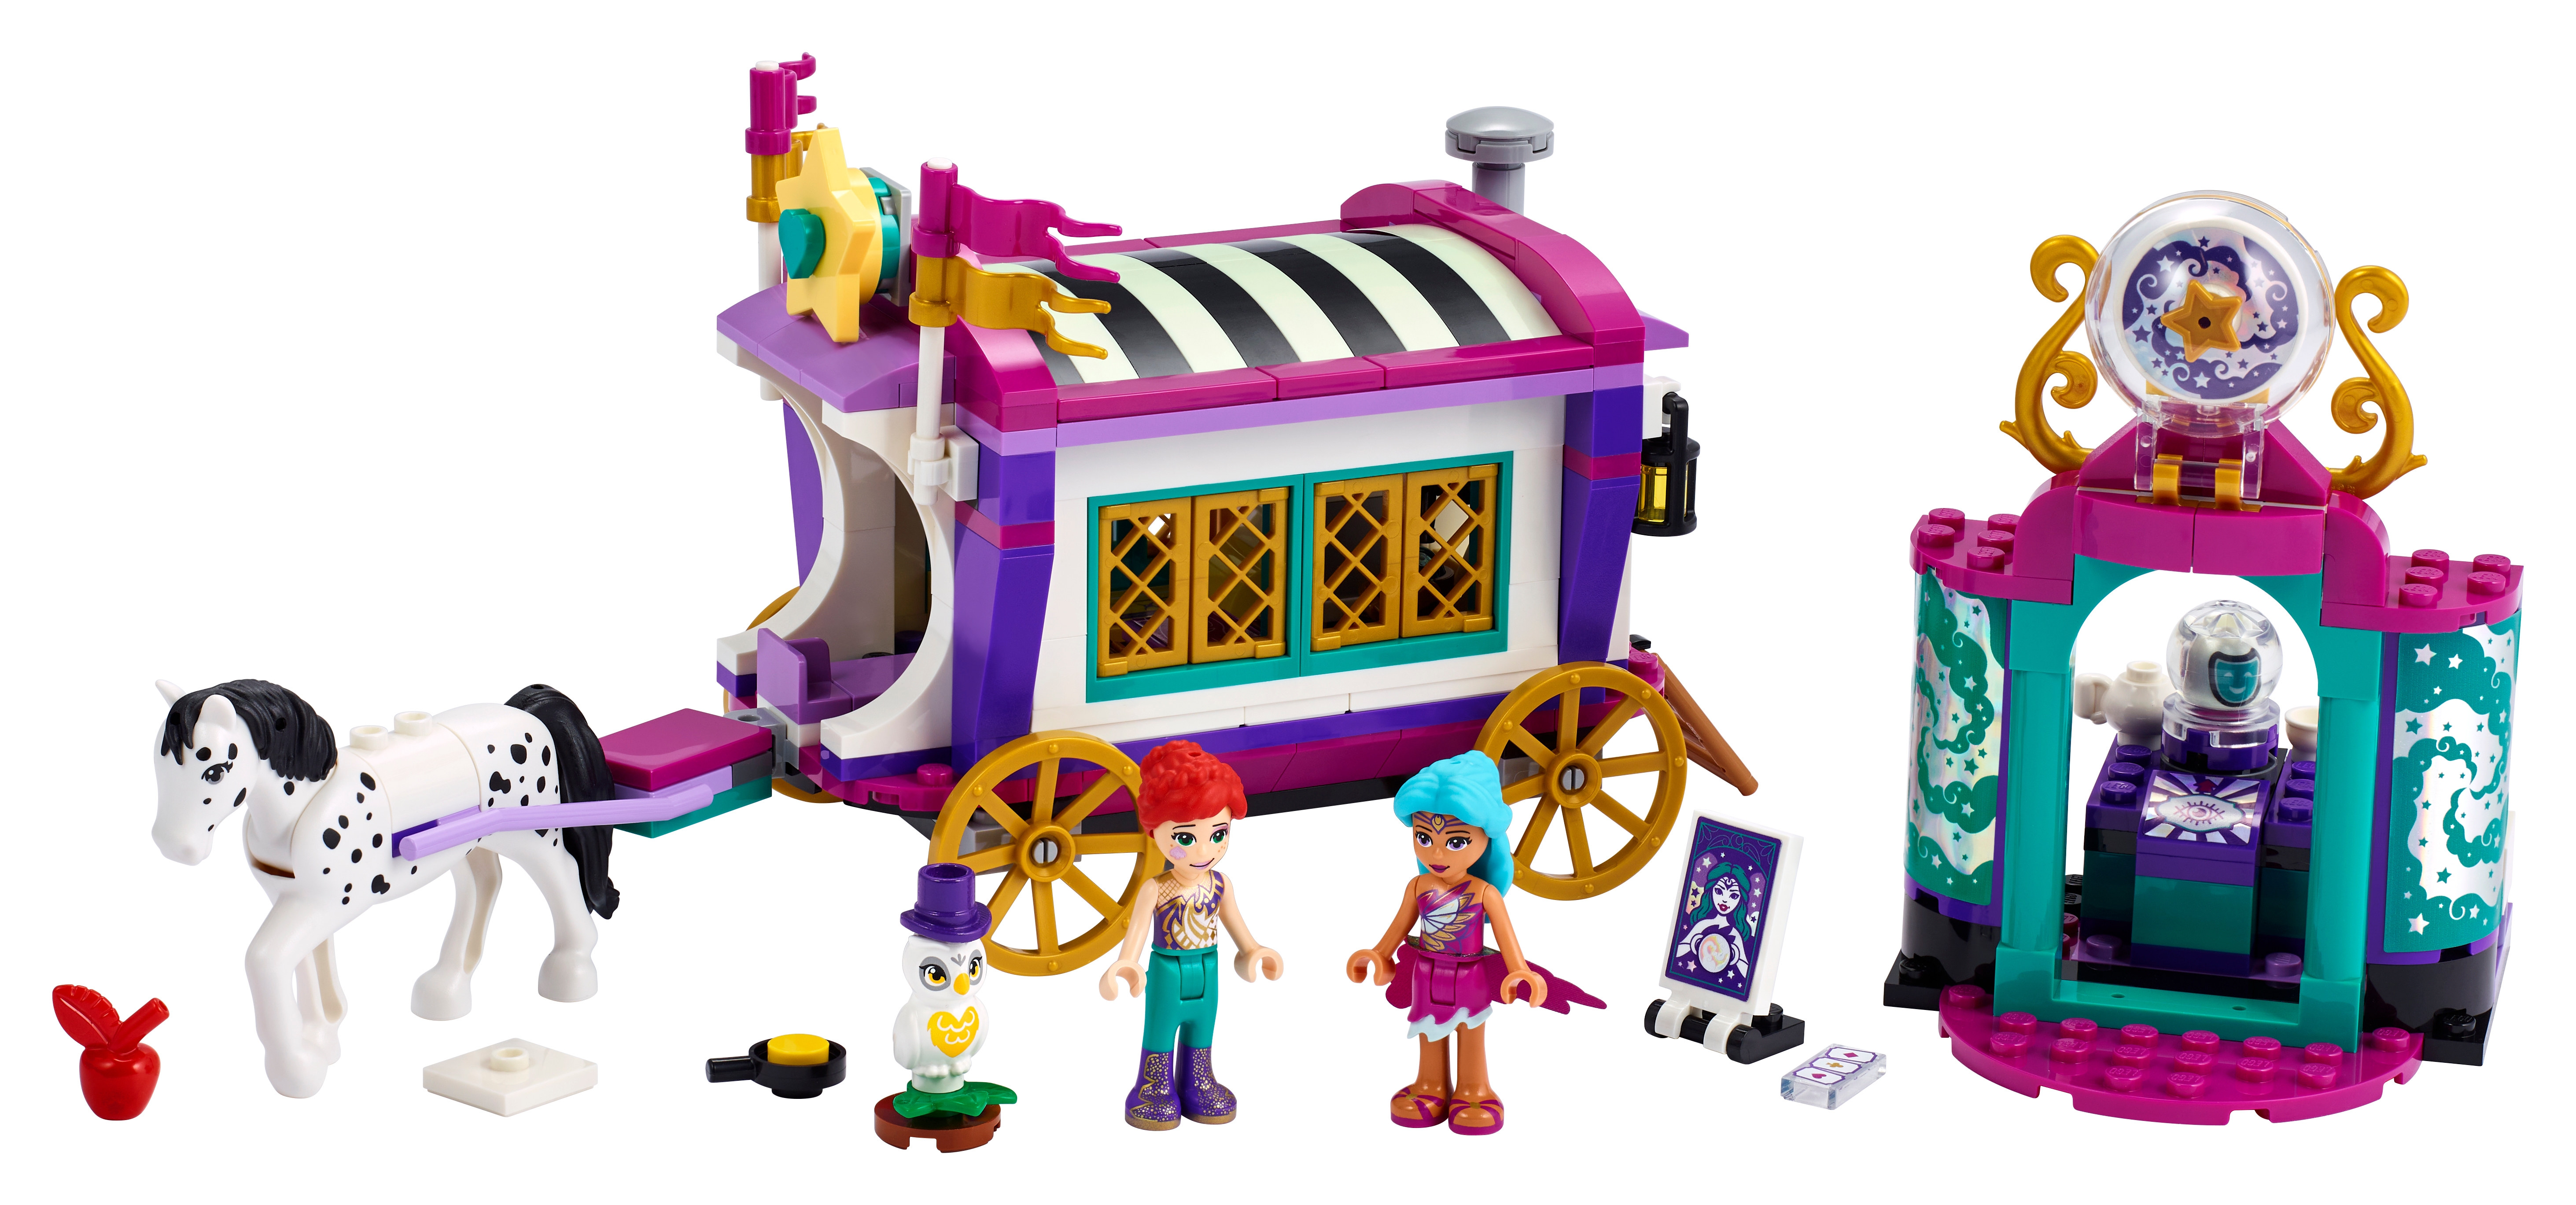 Wrak haai wakker worden Magical Caravan 41688 | Friends | Buy online at the Official LEGO® Shop US